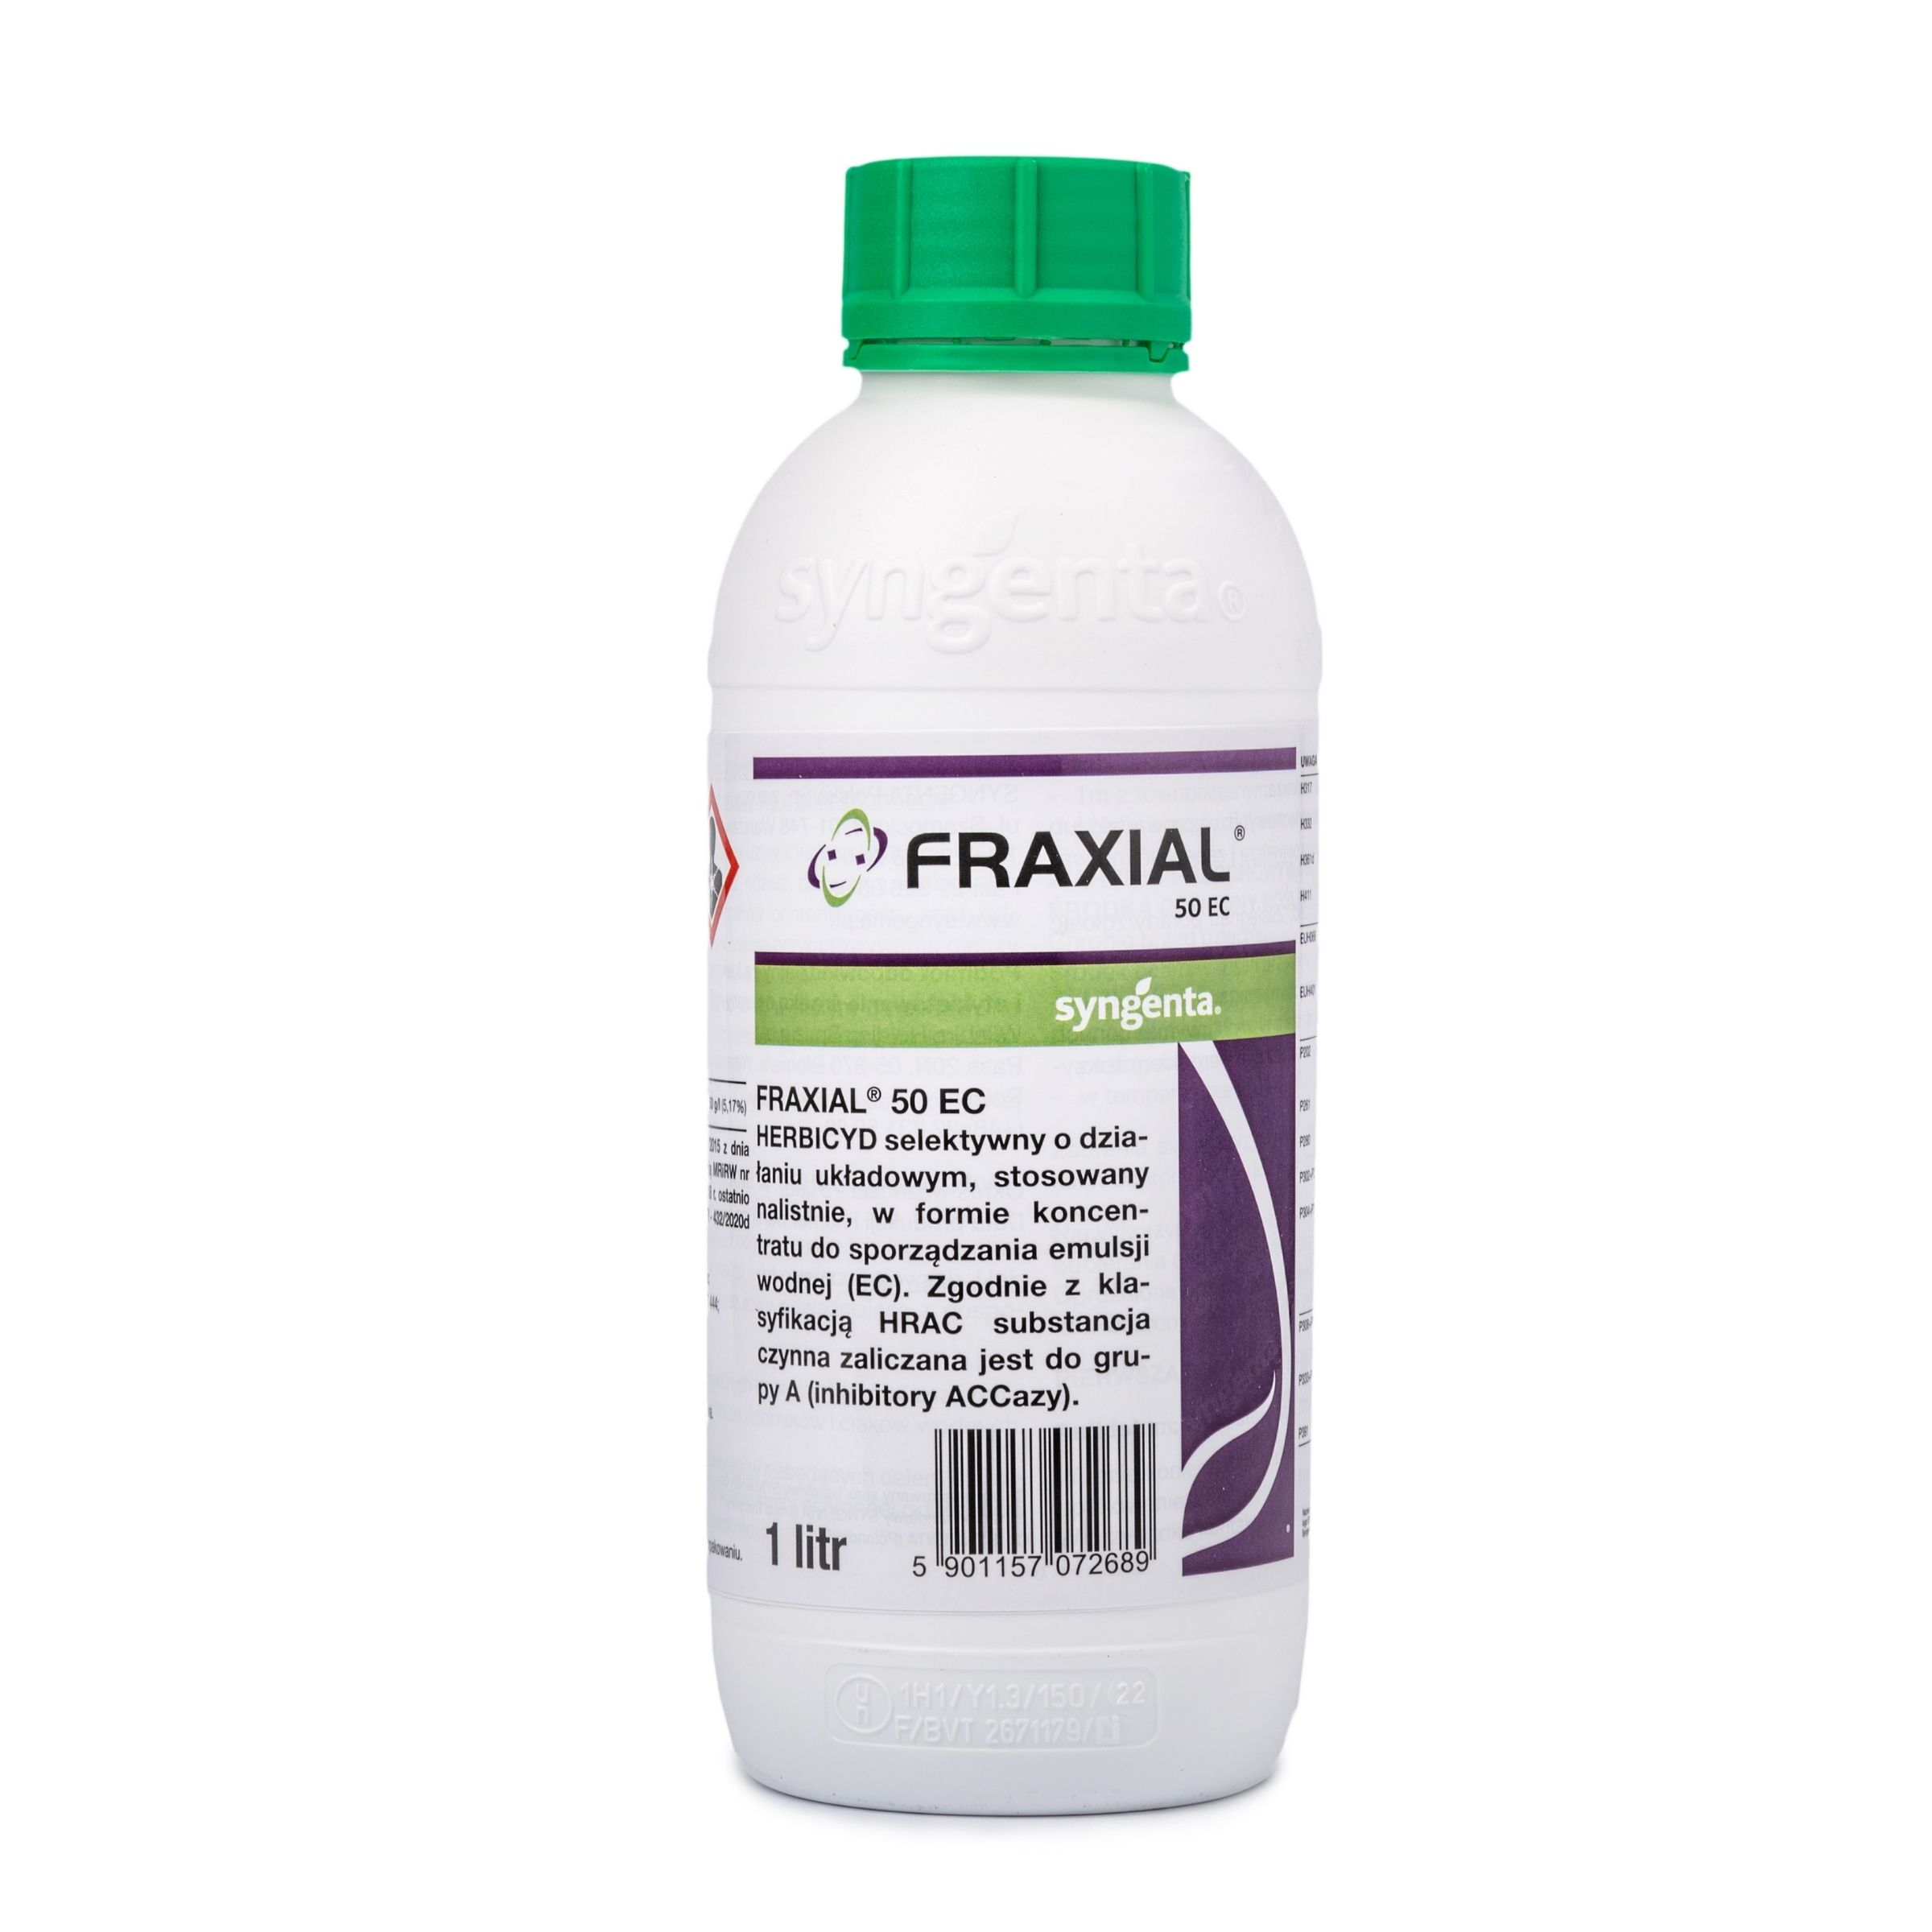 Fraxial-50-ec-1l.jpg